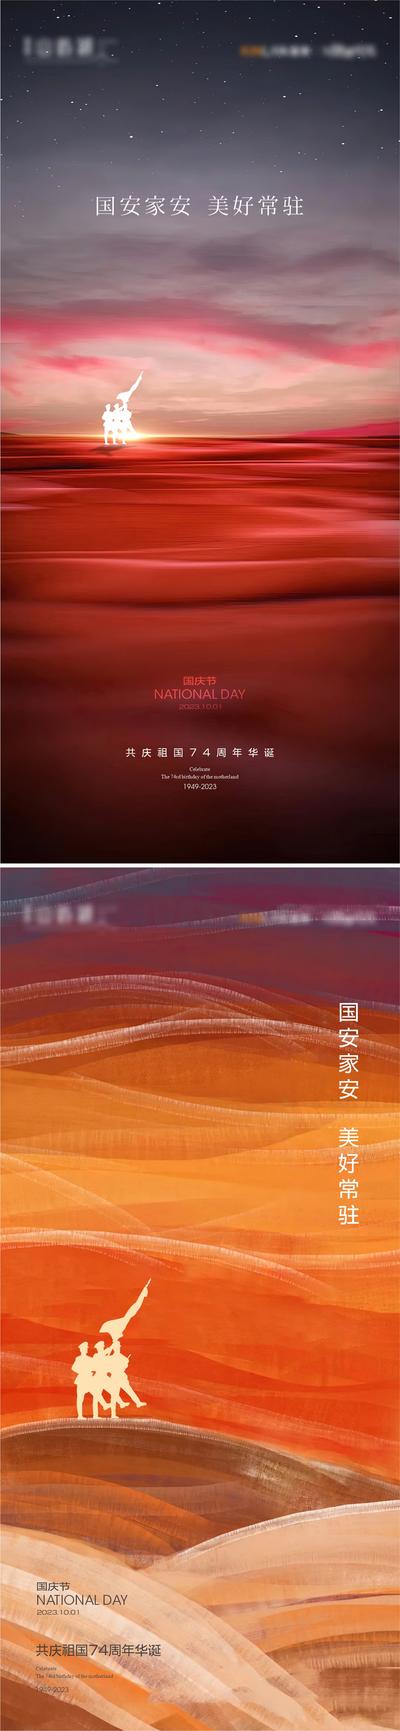 南门网 海报 公历节日 国庆节 抽象 缤纷 剪影 系列